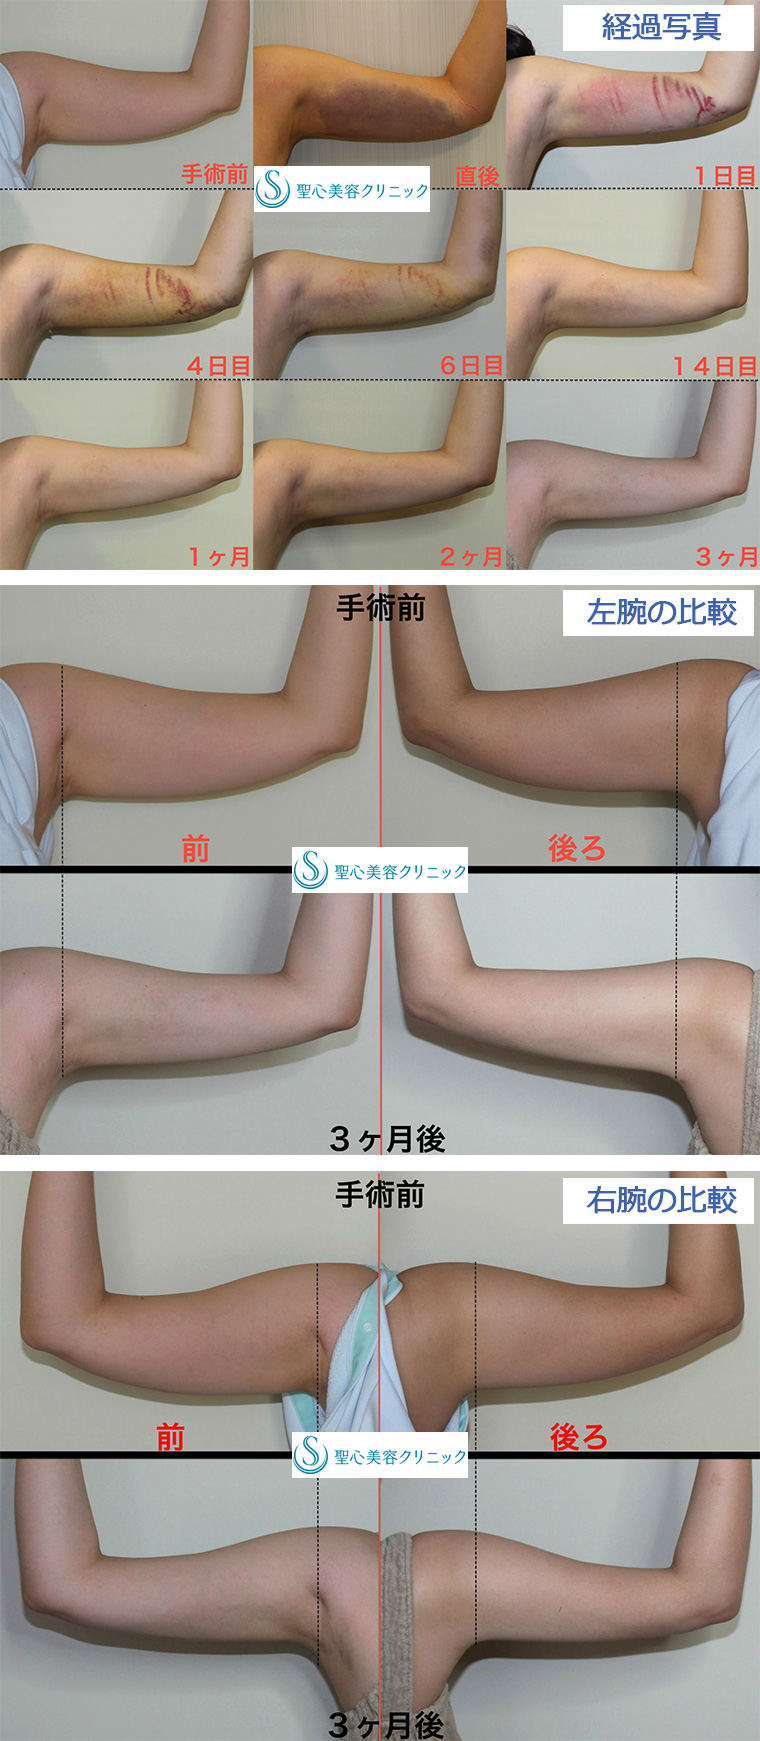 症例写真 術前術後比較 ベイザーリポ2.2脂肪吸引 二の腕